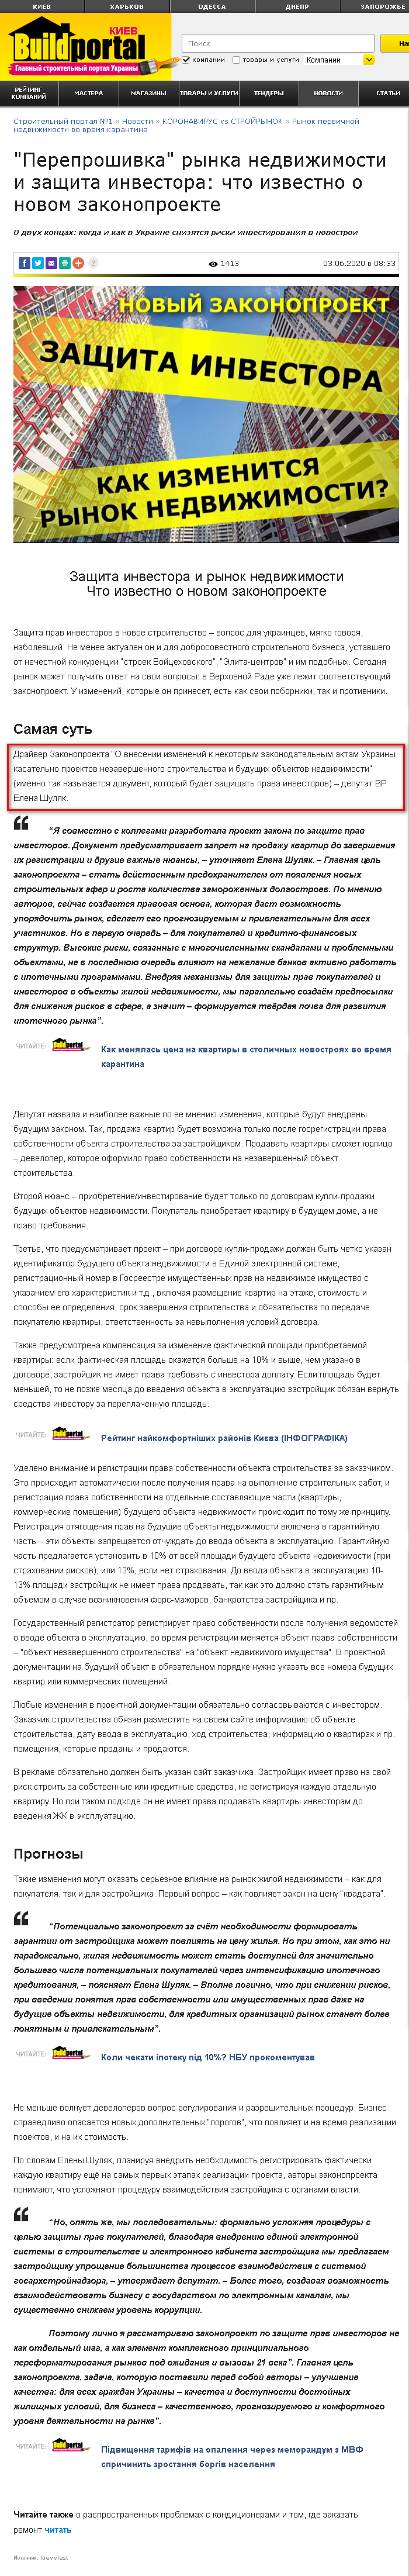 http://budport.com.ua/news/17664-pereproshivka-rynka-nedvizhimosti-i-zaschita-investora-chto-izvestno-o-novom-zakonoproekte